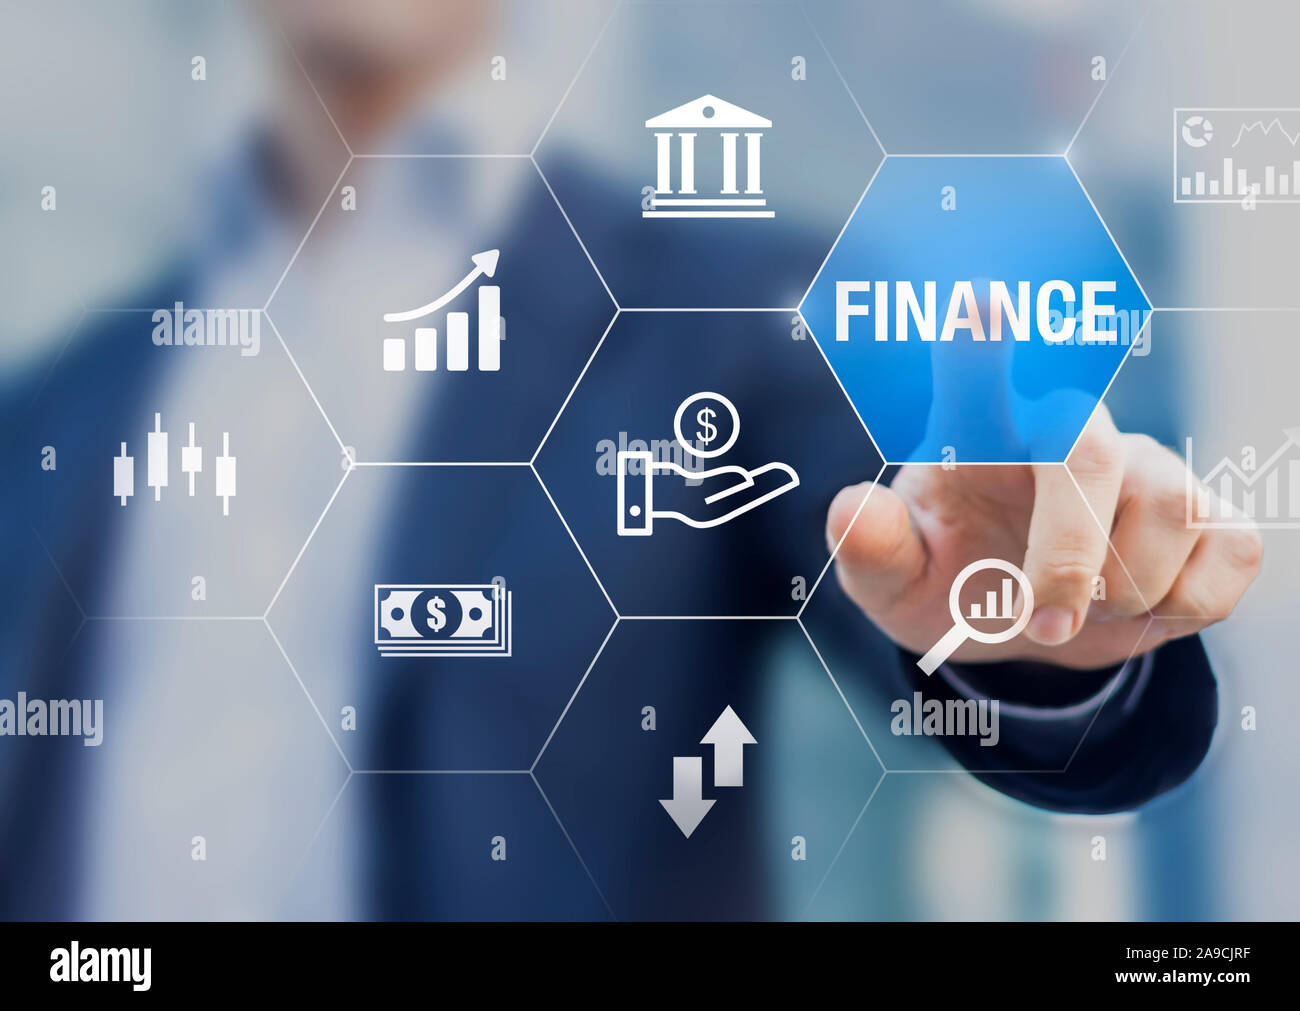 Finanzierung von Investitionen und Assets Management Konzept mit Geschäftsmann berühren Ikonen der Börse, Bank, Analyse, ROI, Geld und fintech Stockfoto